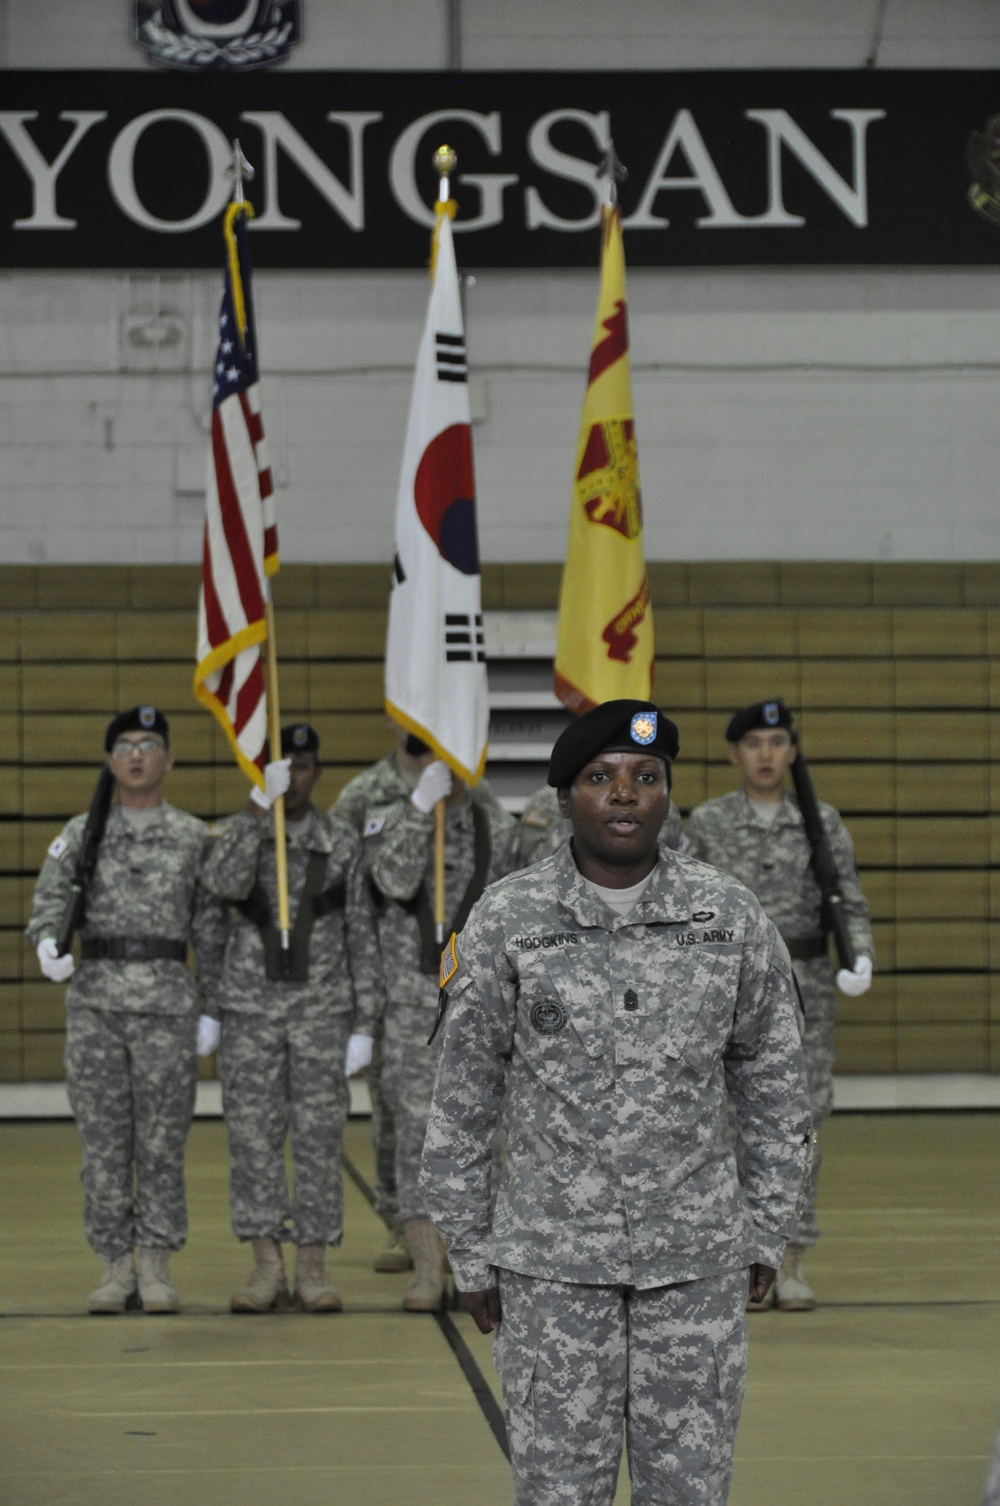 Yongsan welcomes Command Sgt. Maj. Hodgkins